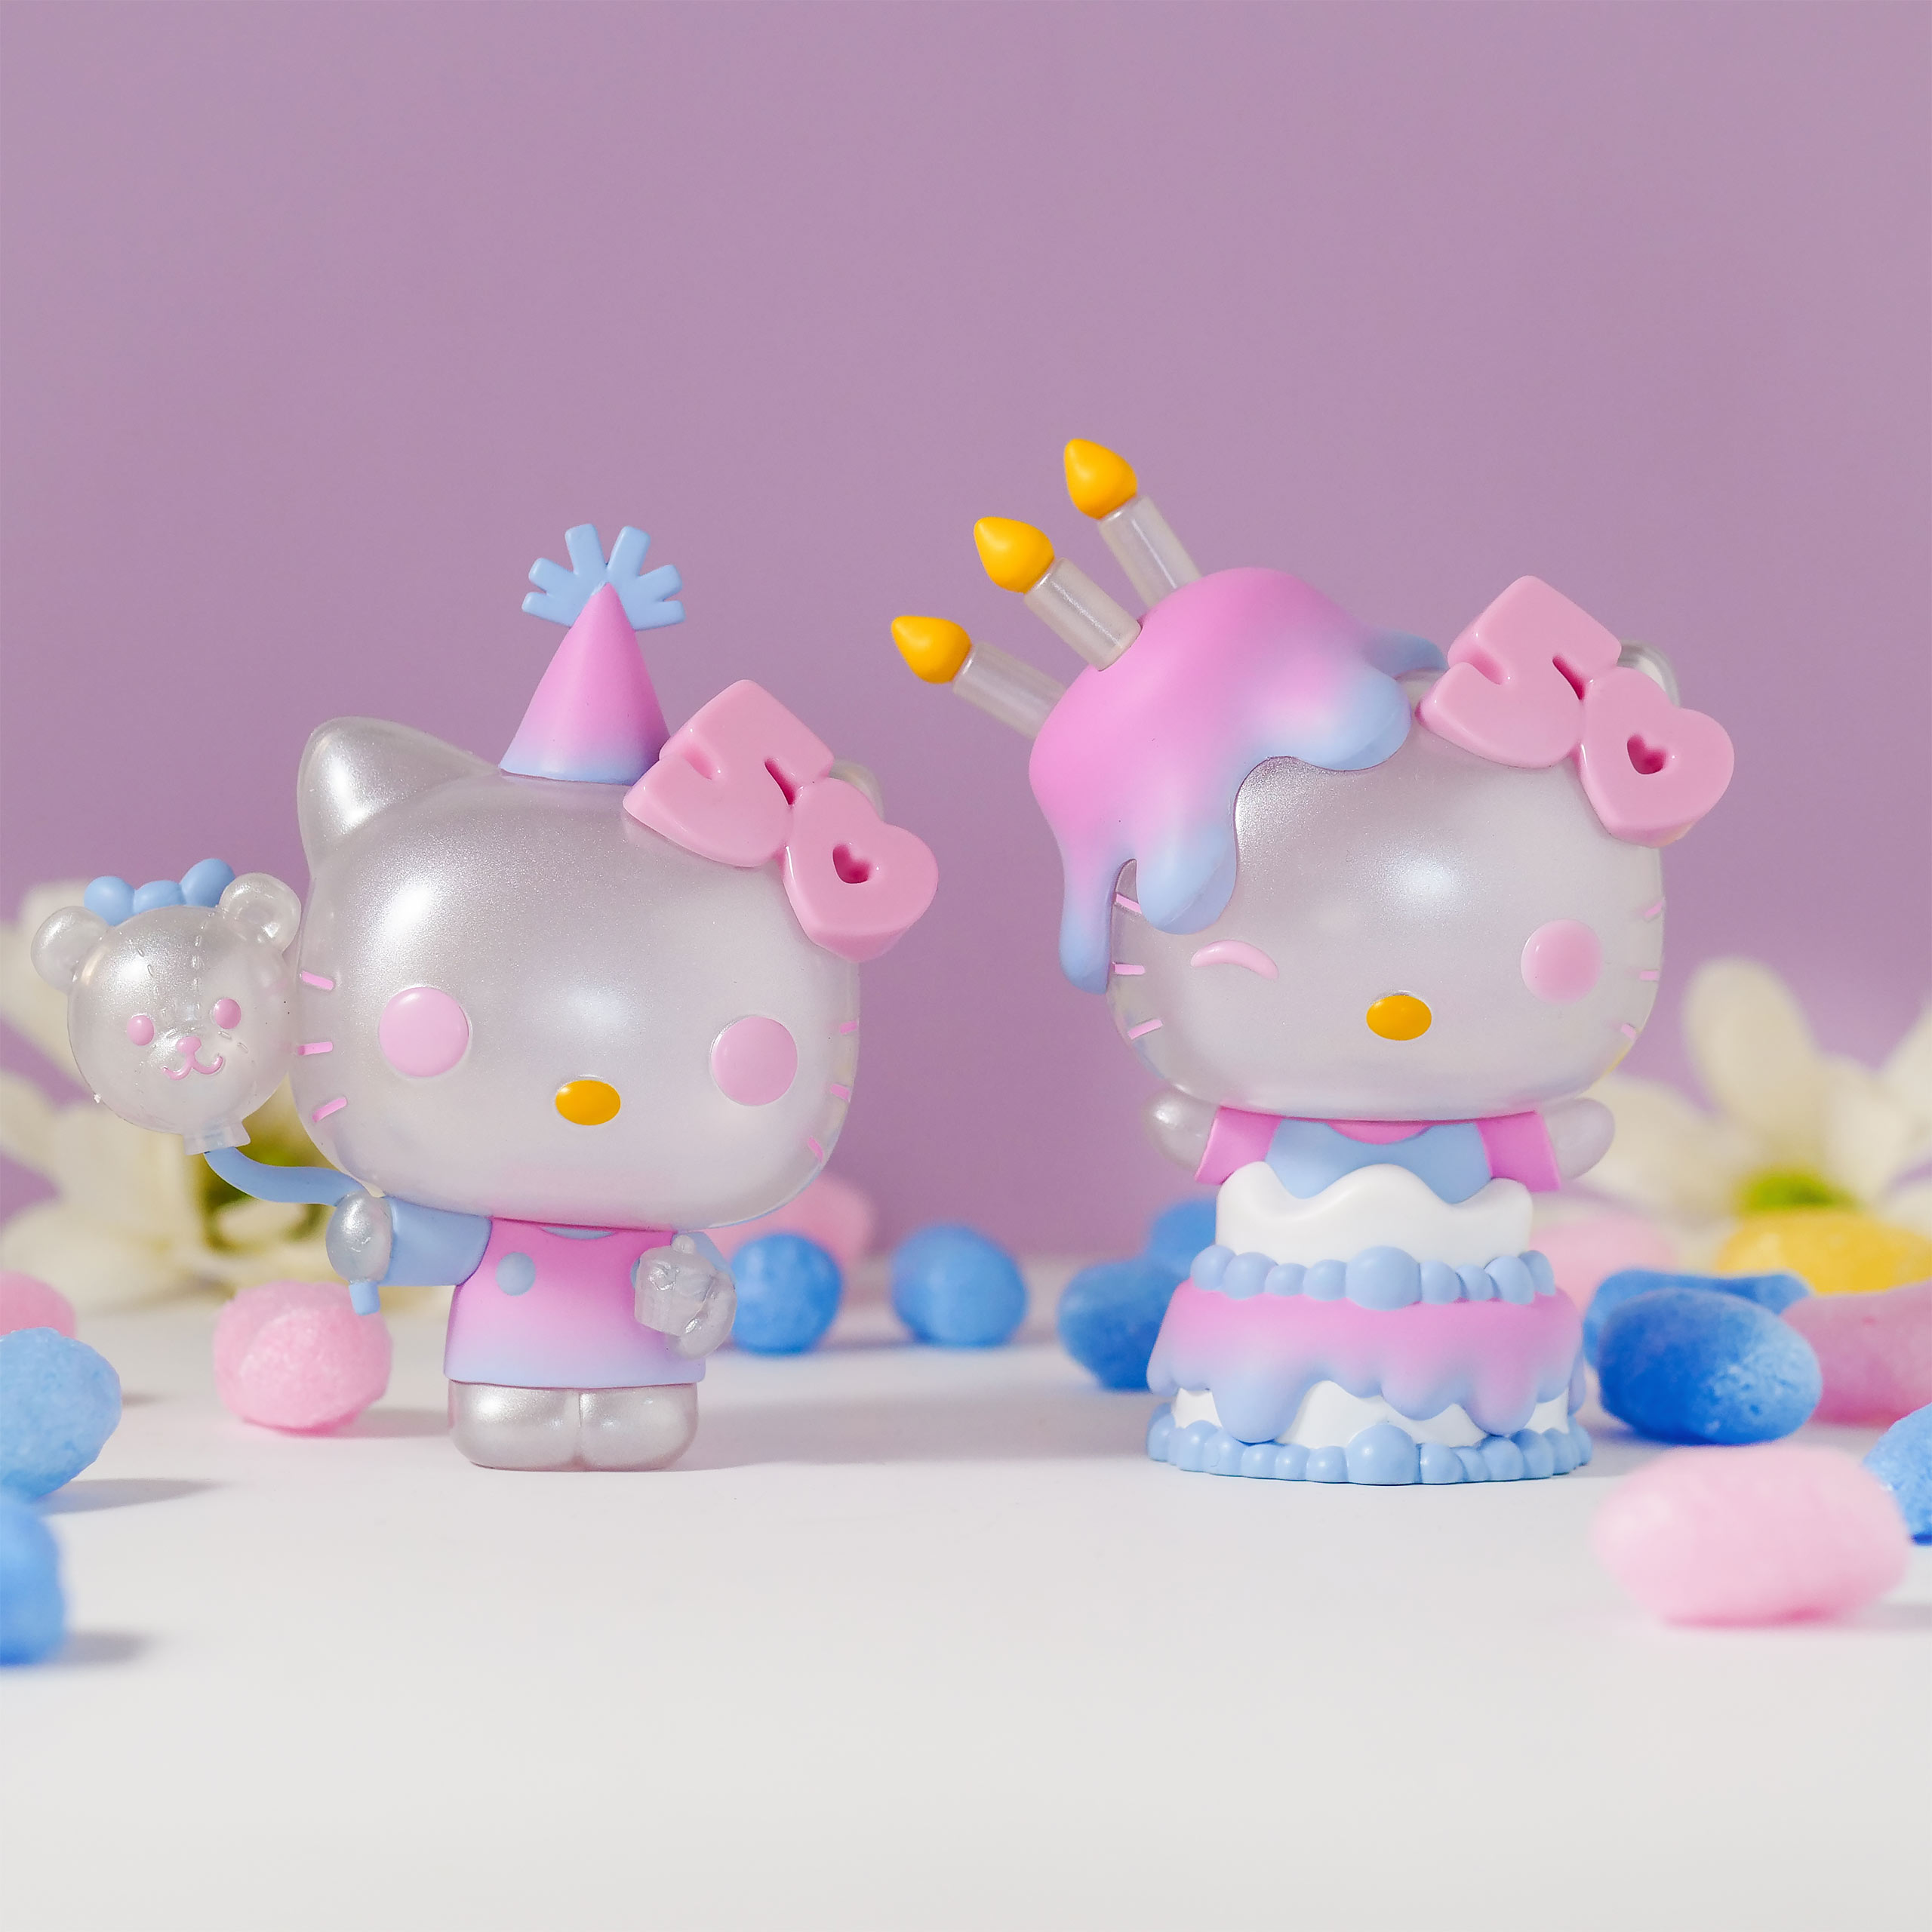 Hello Kitty - Funko Pop Figuur met Ballon